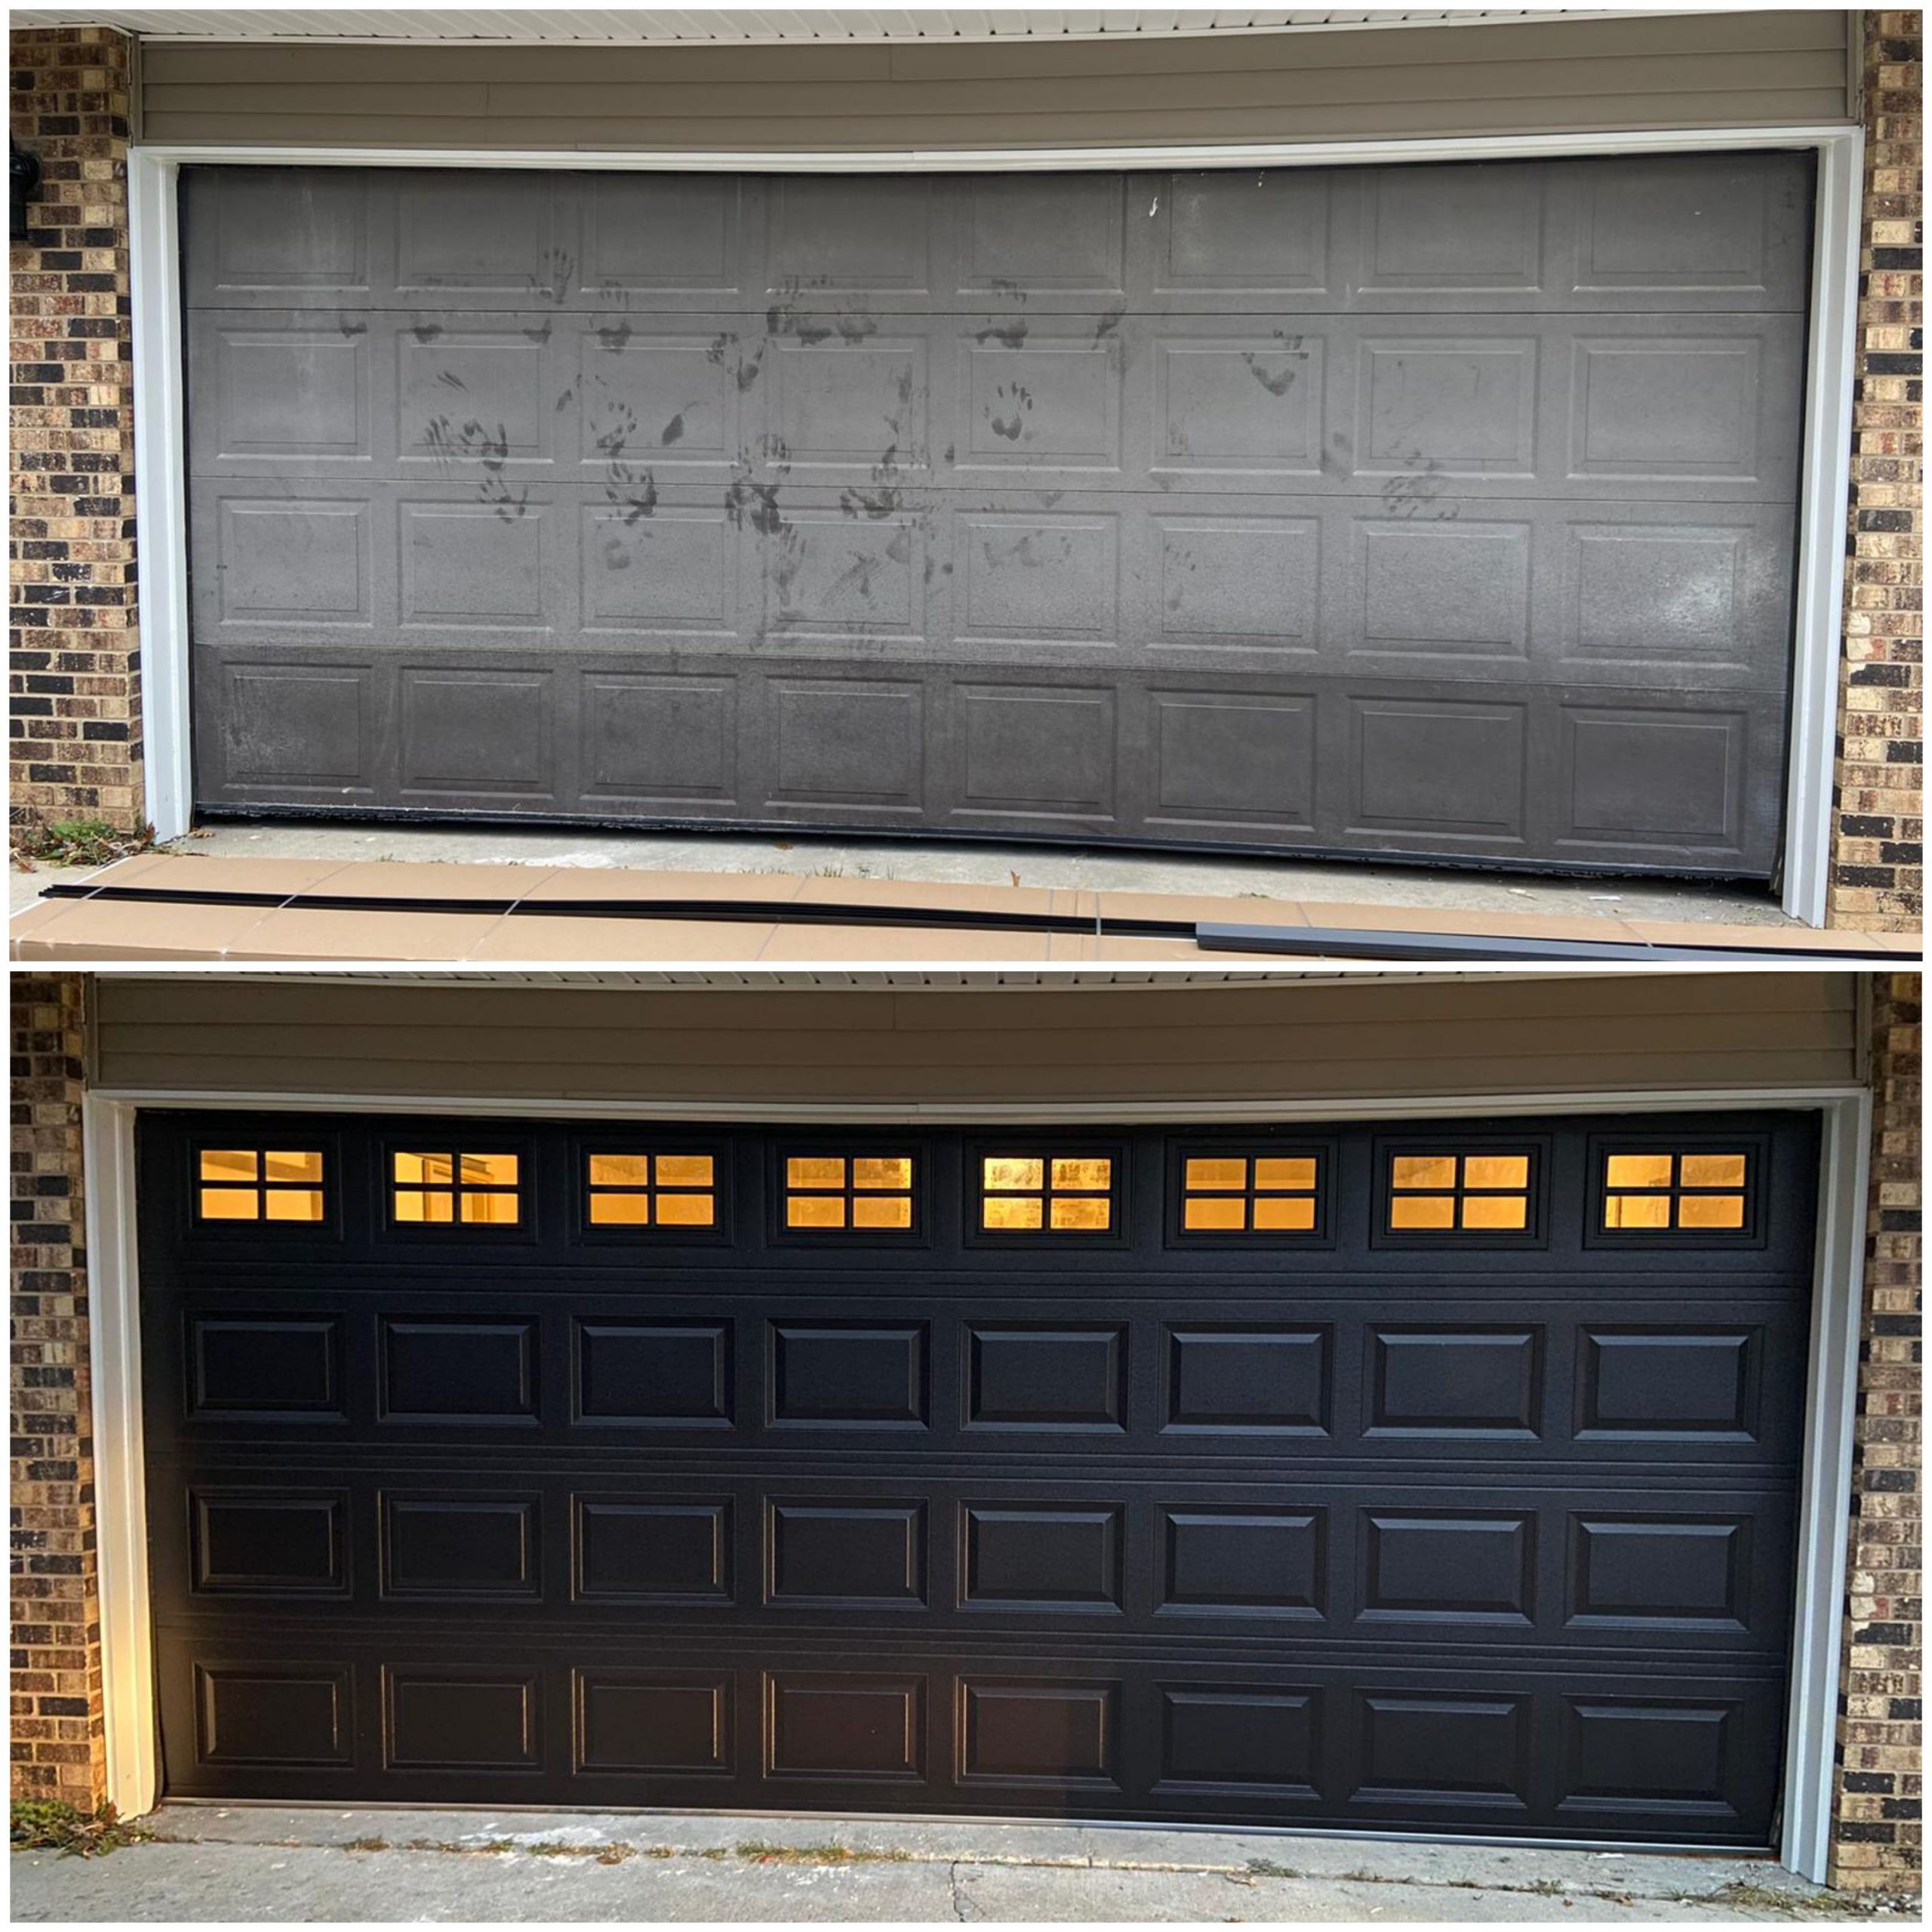 Garage Door Installation 2